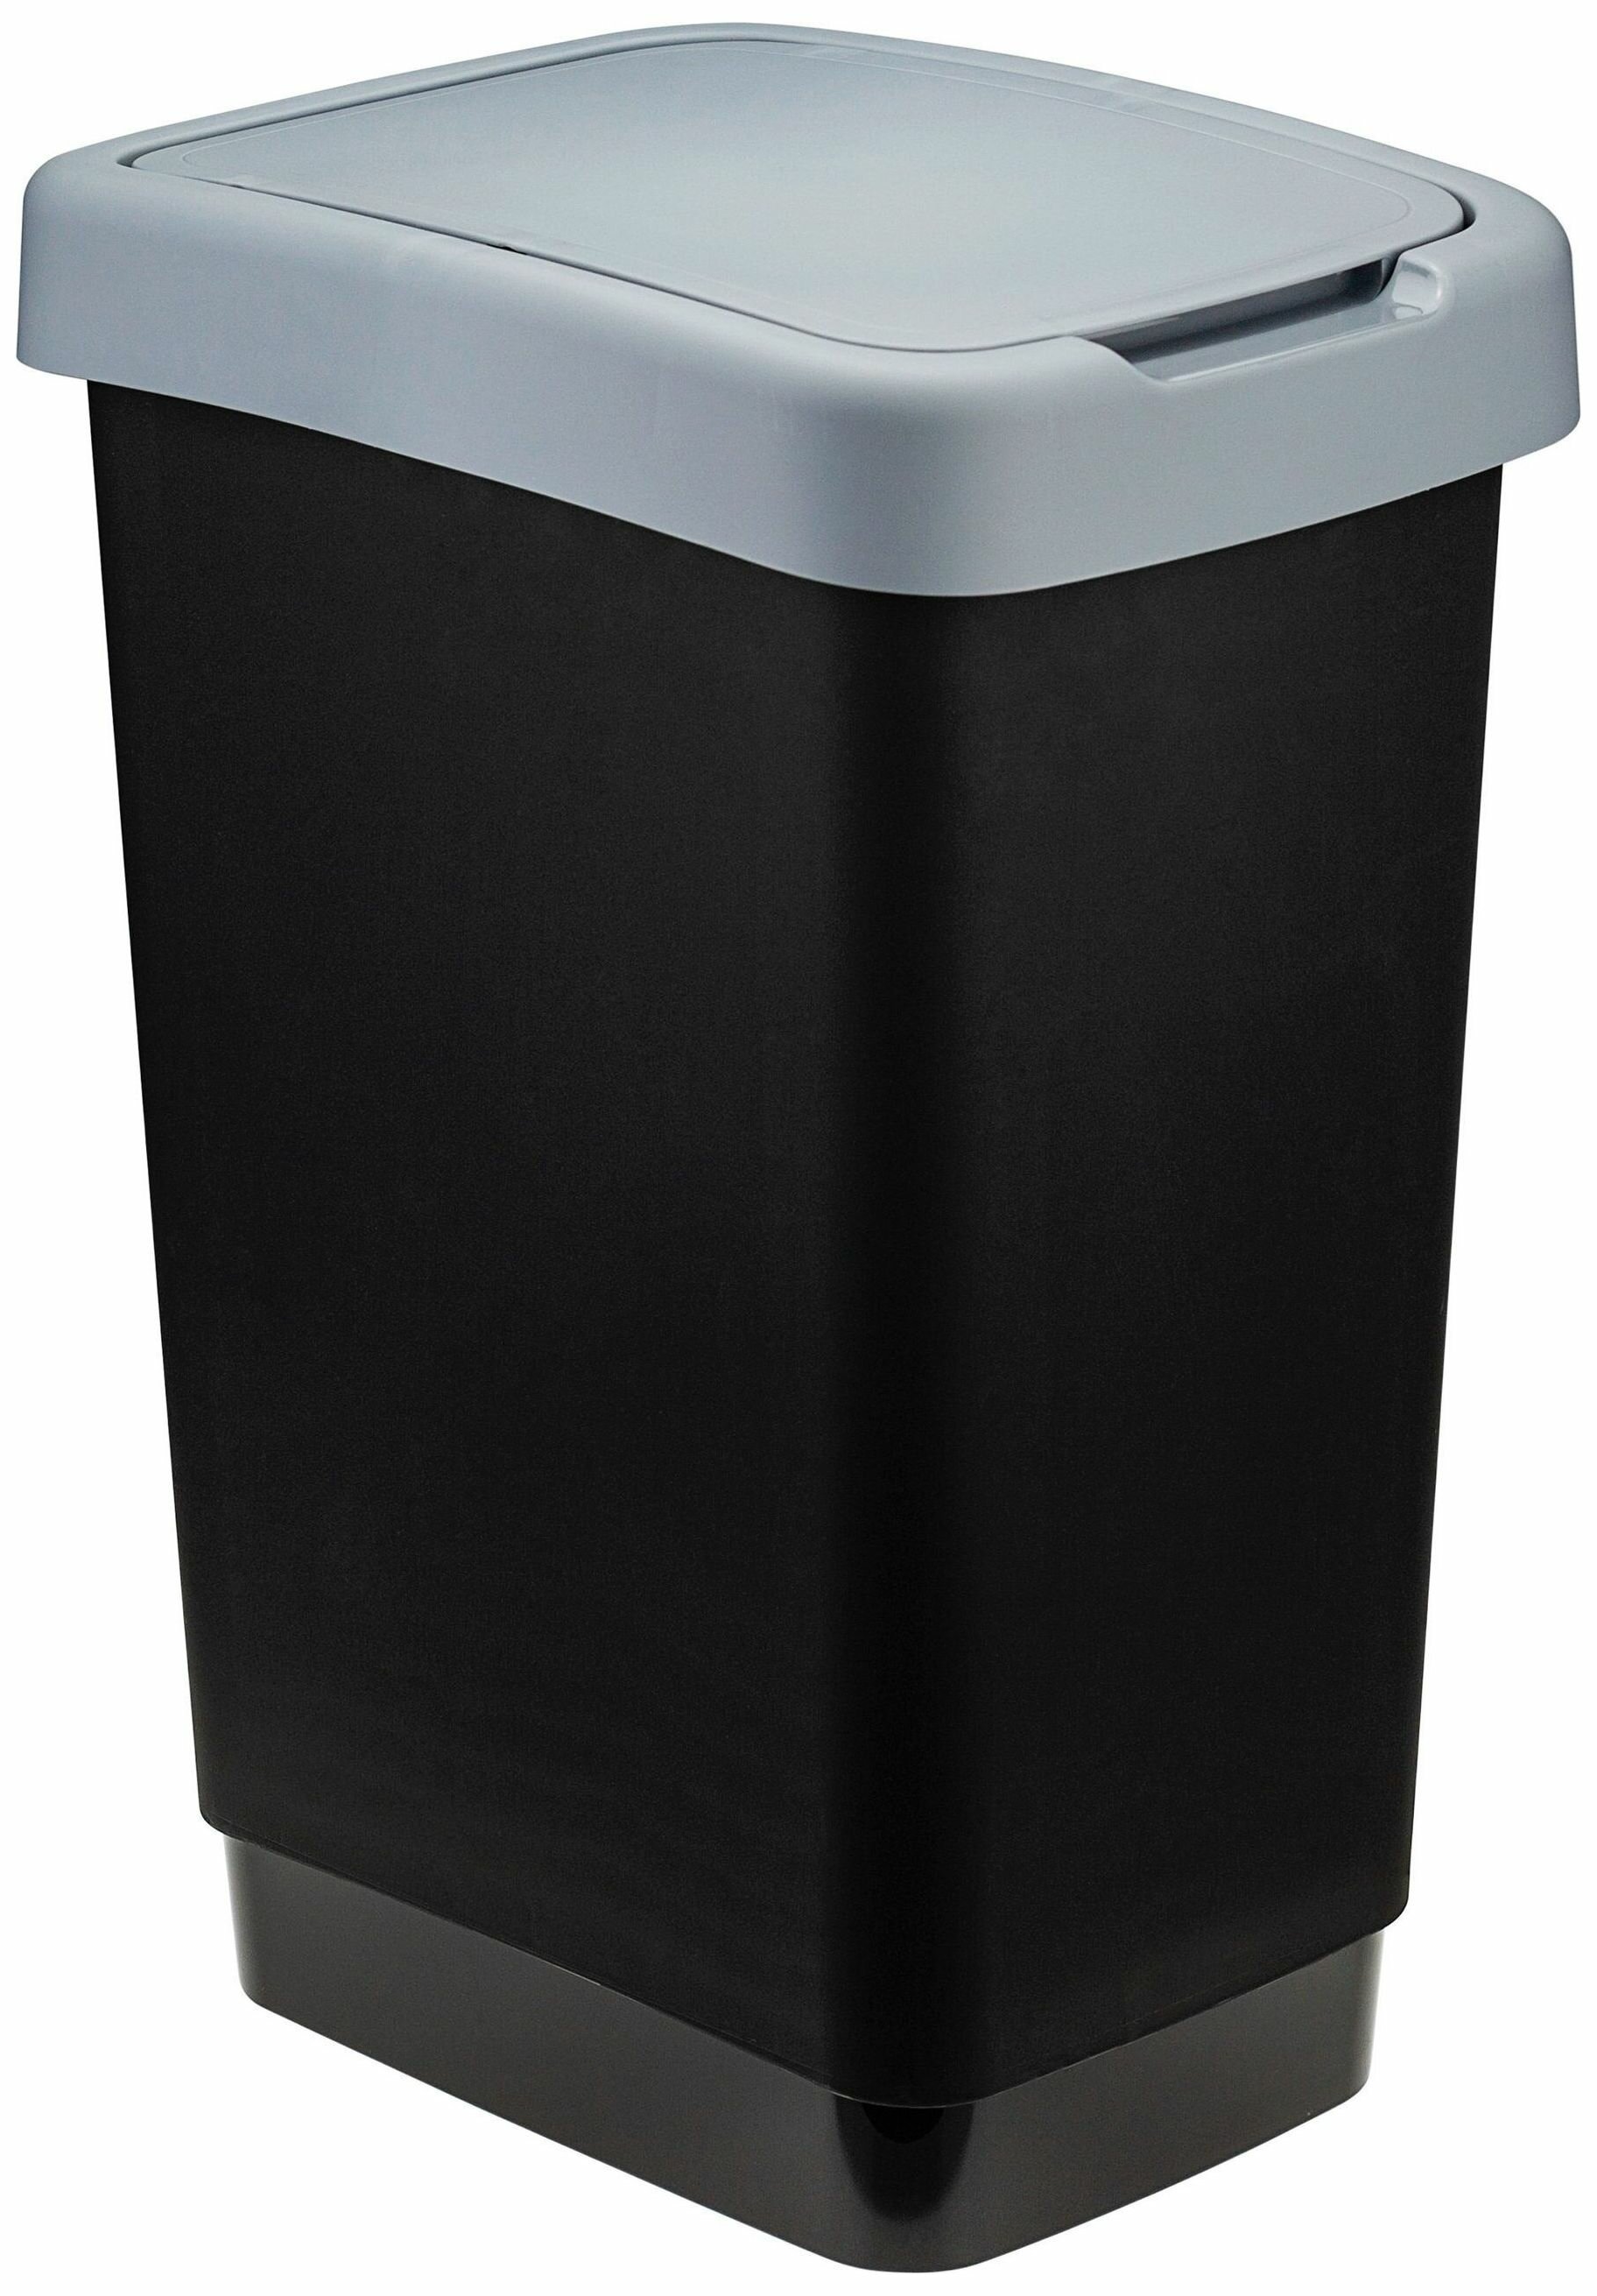 Контейнер для мусора Твин прямоугольный с качающейся крышкой объем 25 л цвет черно-серый